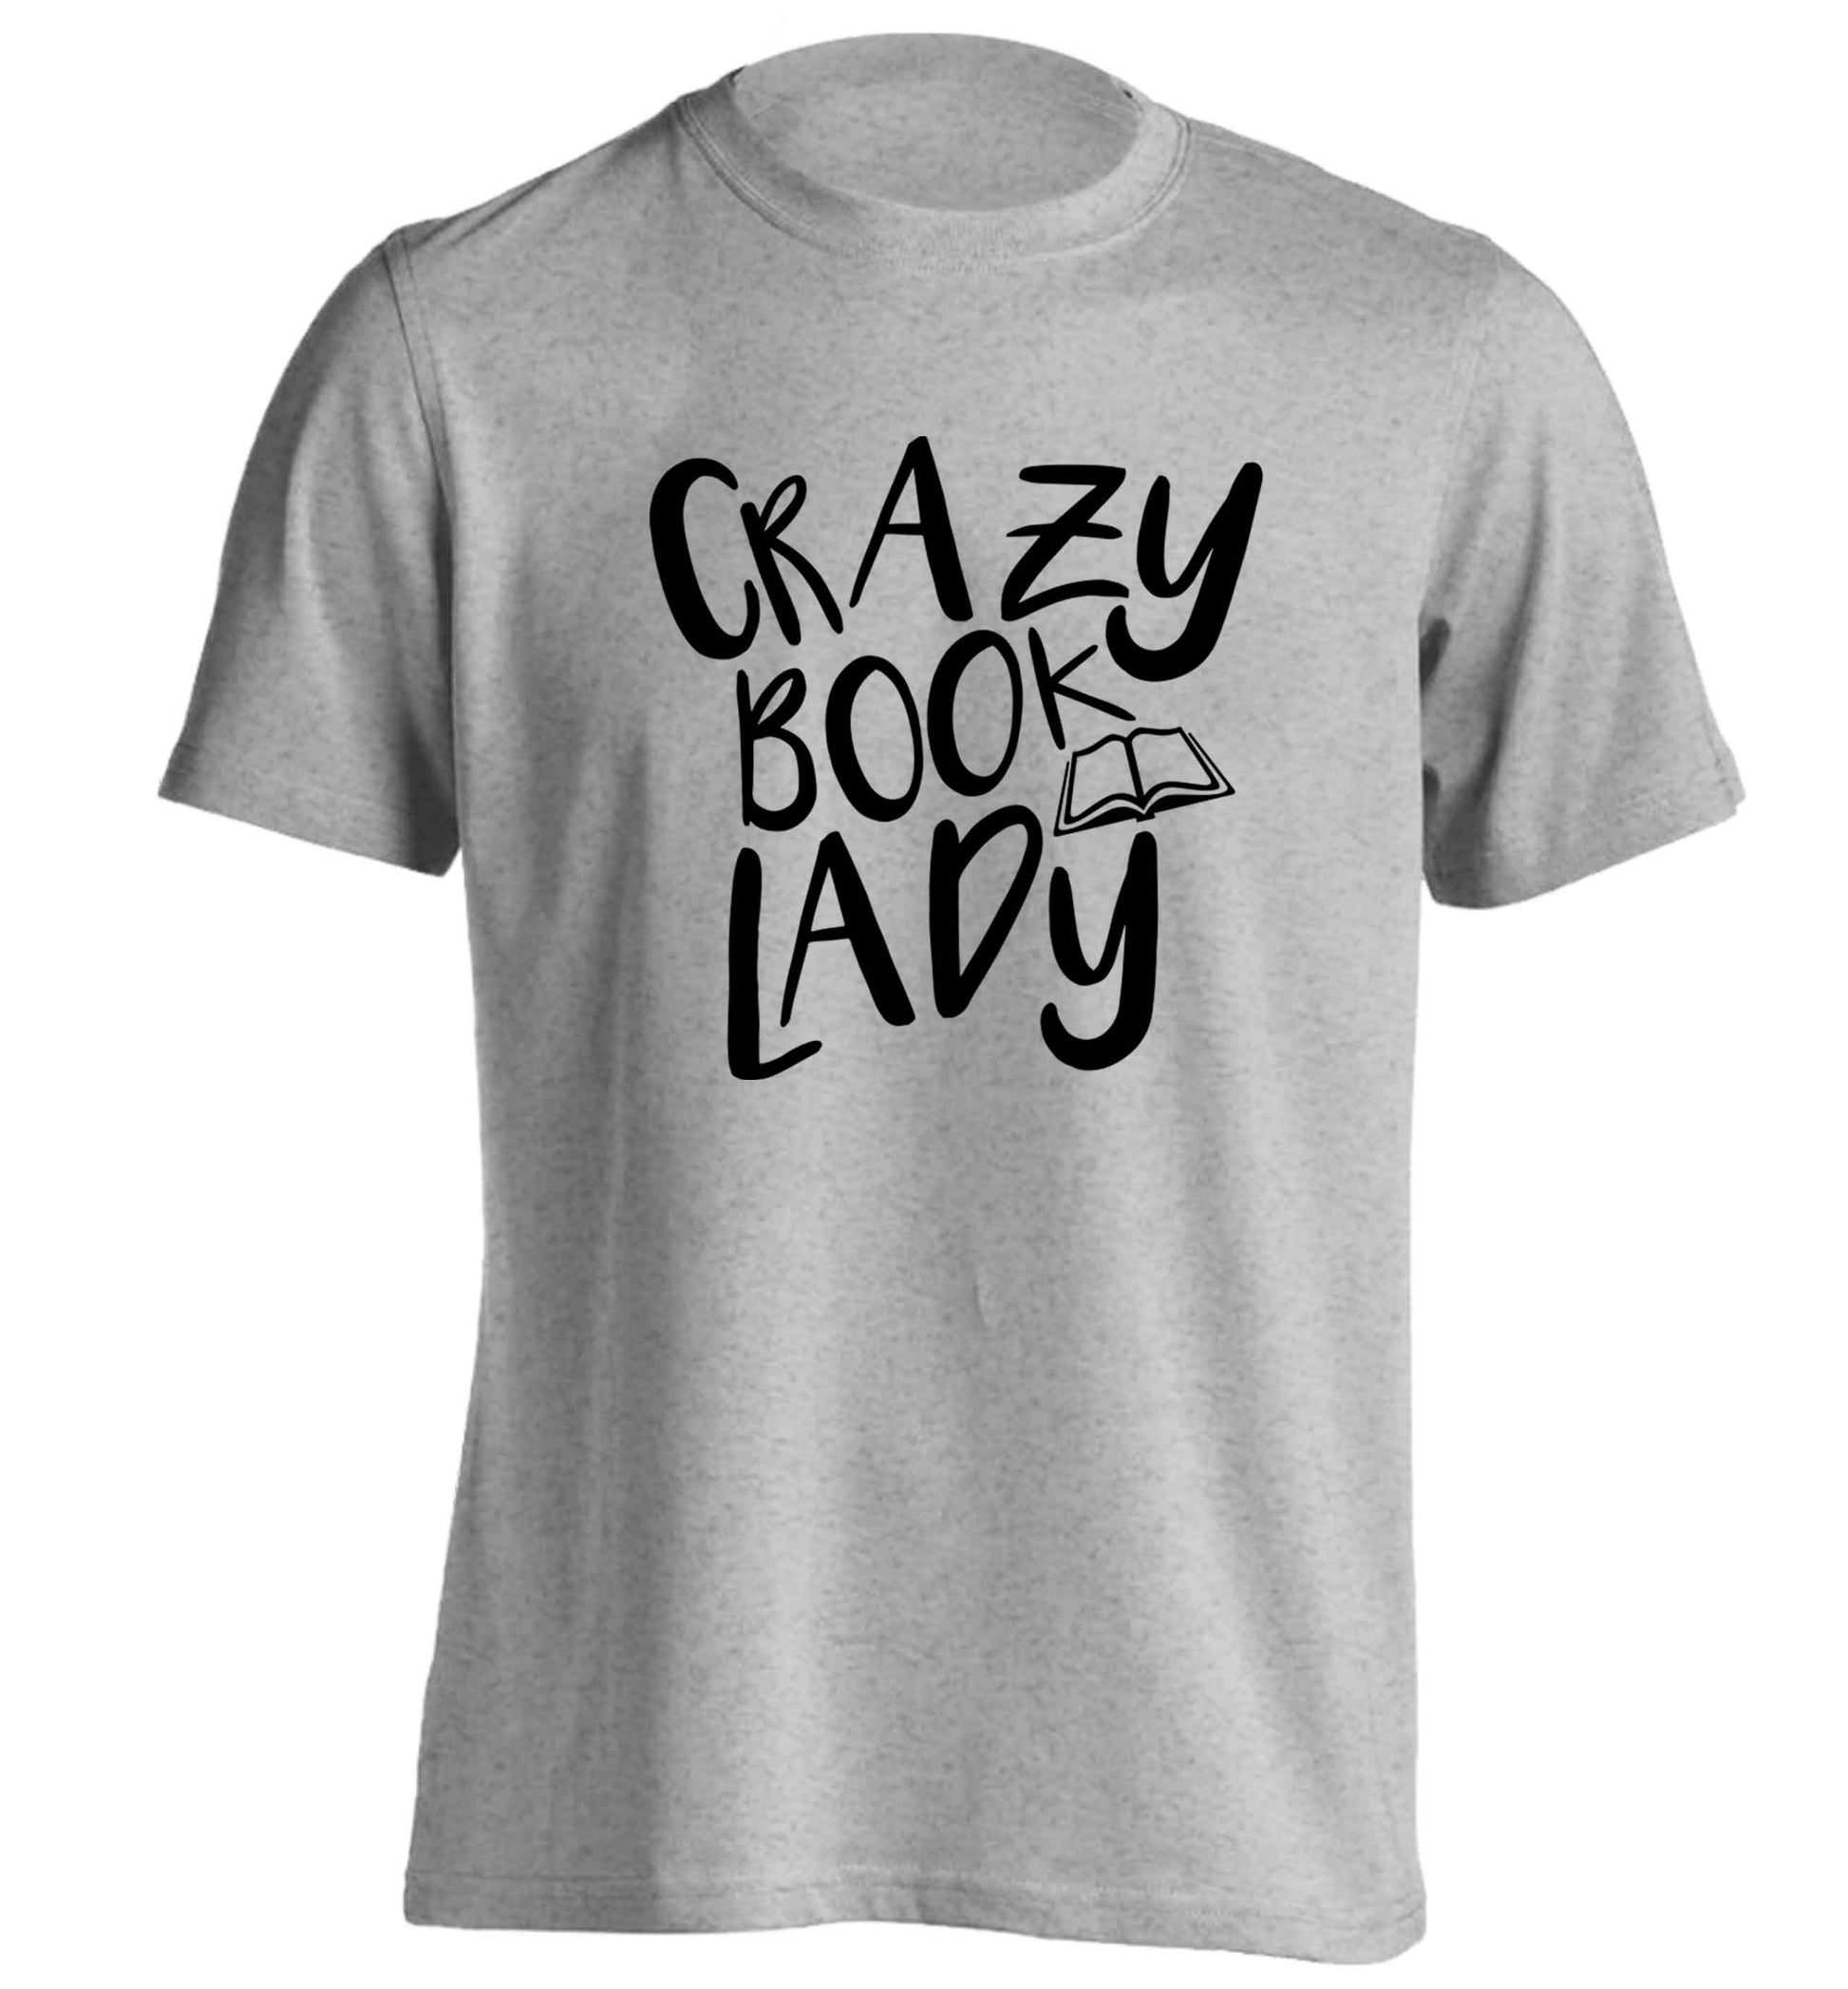 Crazy book lady adults unisex grey Tshirt 2XL